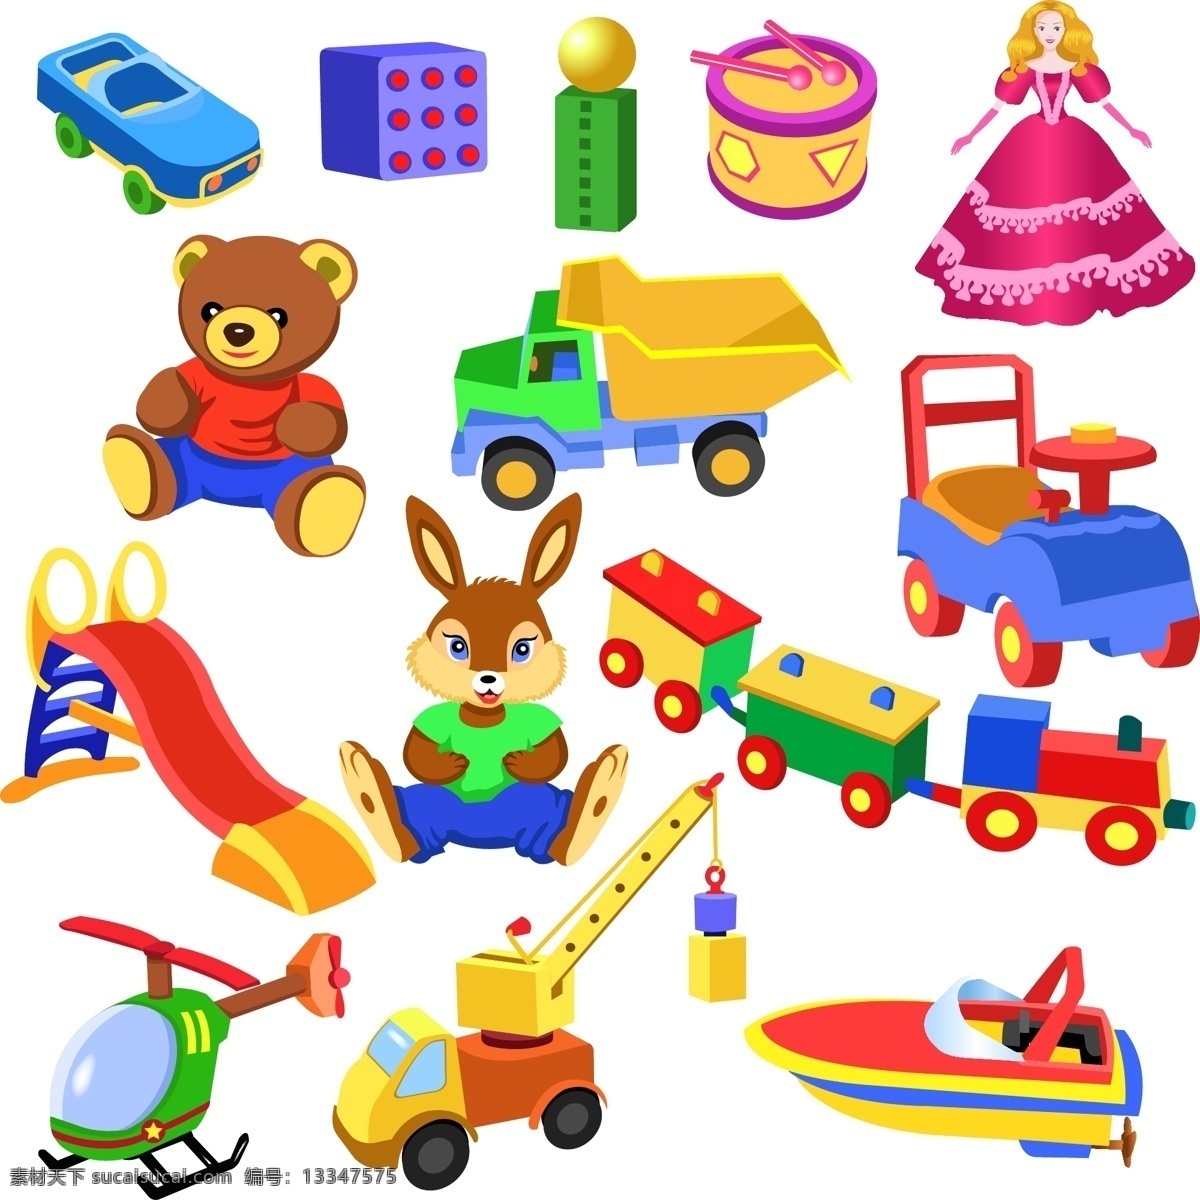 卡通玩具 玩具熊 玩具火车 玩具汽车 玩具飞机 玩具 玩具直升机 玩具船 玩具兔子 玩具娃娃 卡通汽车 生活百科 休闲娱乐